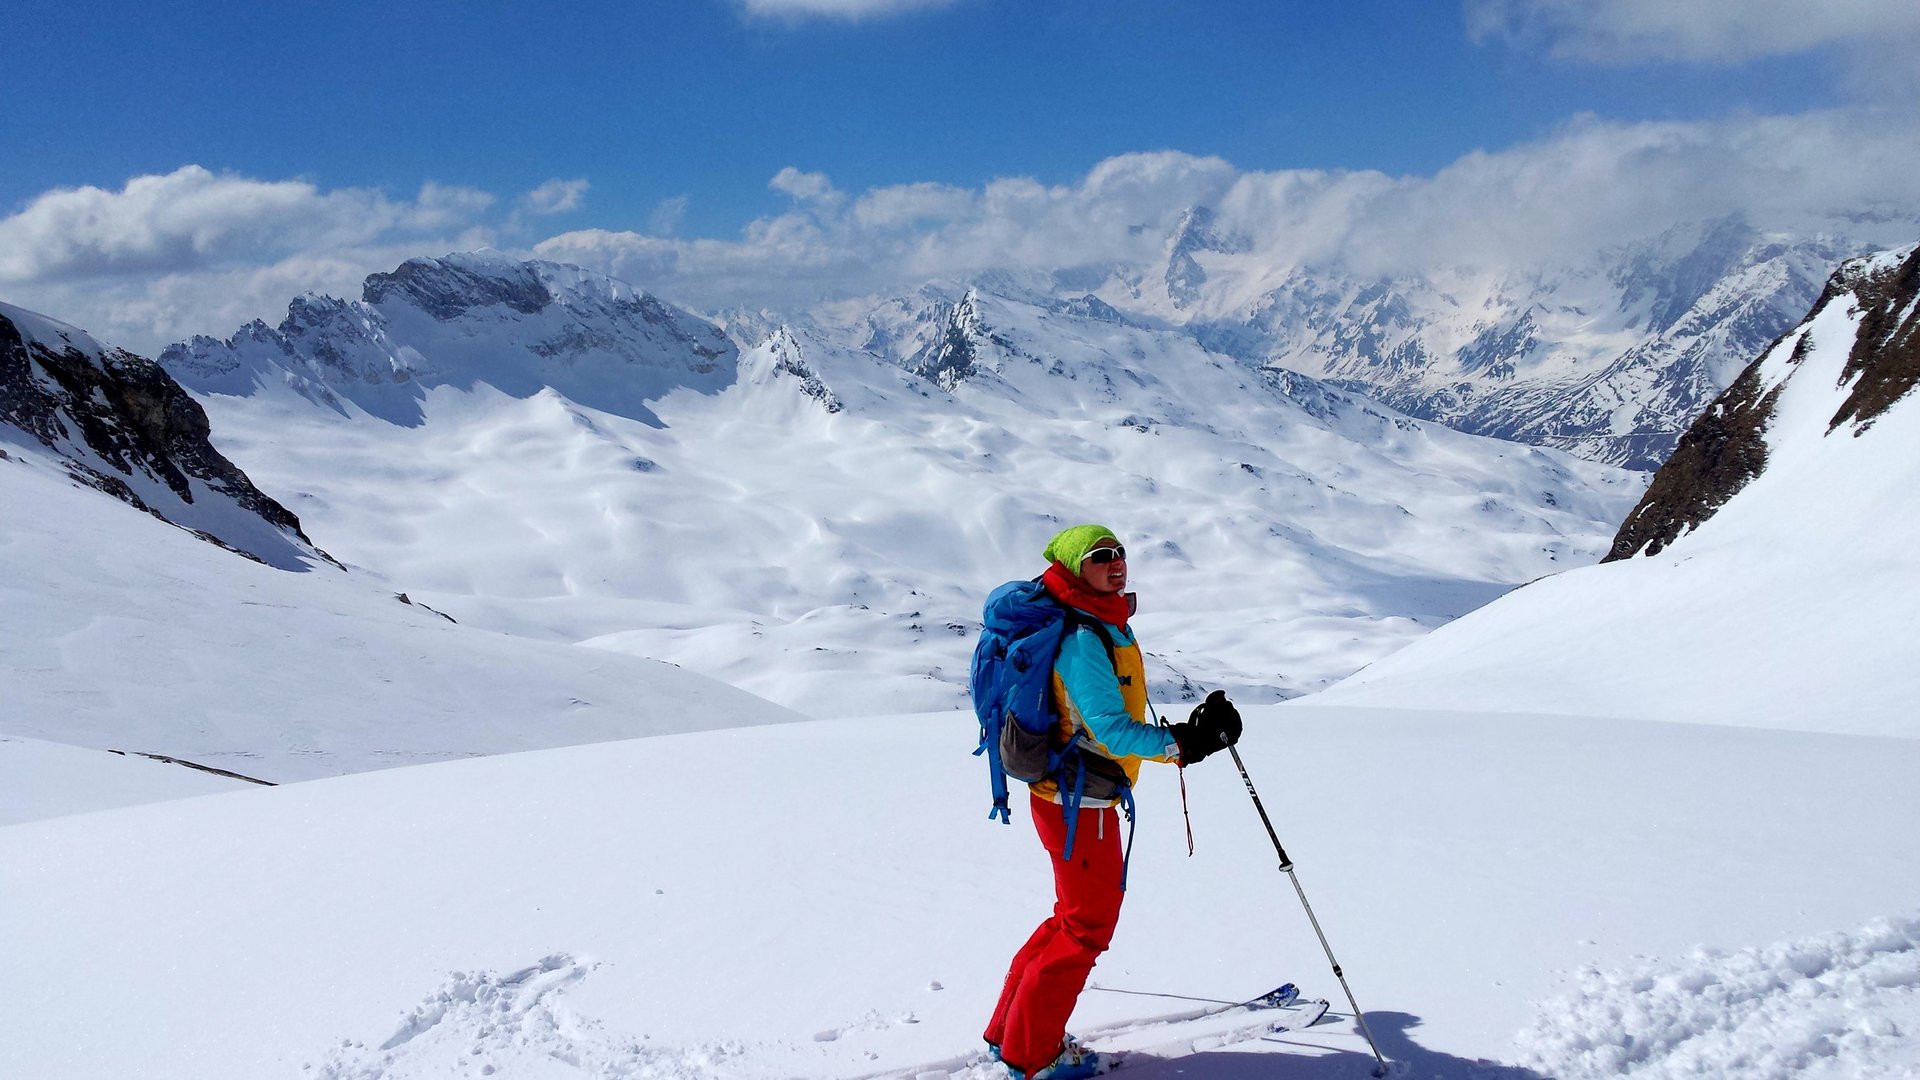 Ski tour Botzer Passeiertal Valley South Tirol Italy Pension Widmann